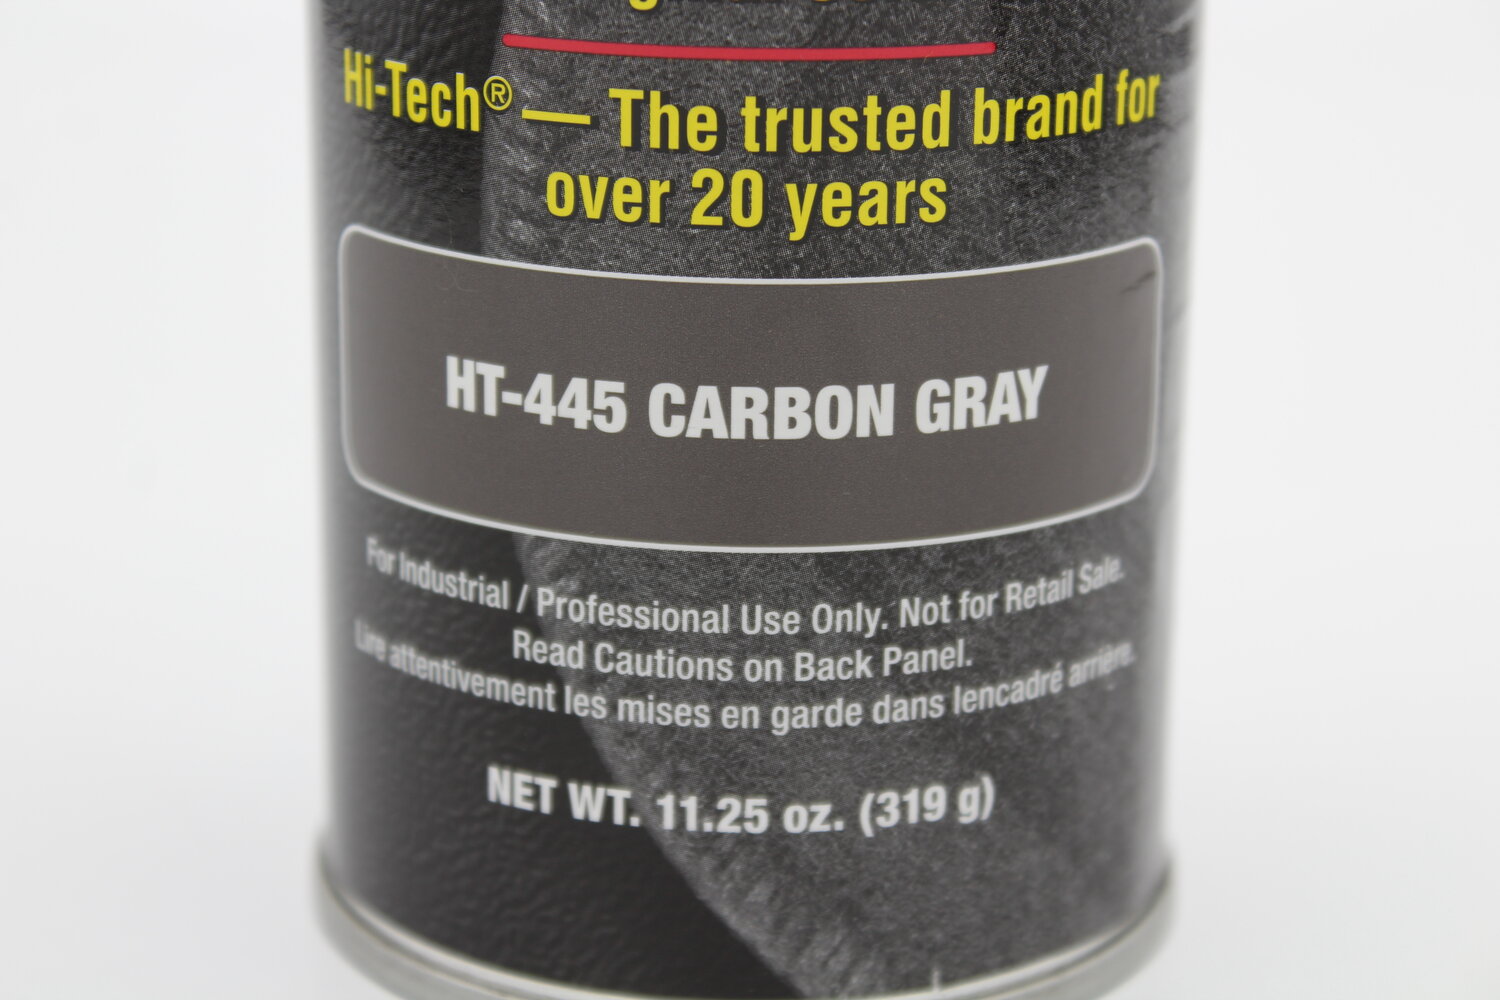 Hi-Tech, Greige, Vinyl, Plastic & Carpet Dye — ADS Auto Detail Supplies -  ADS Chemicals